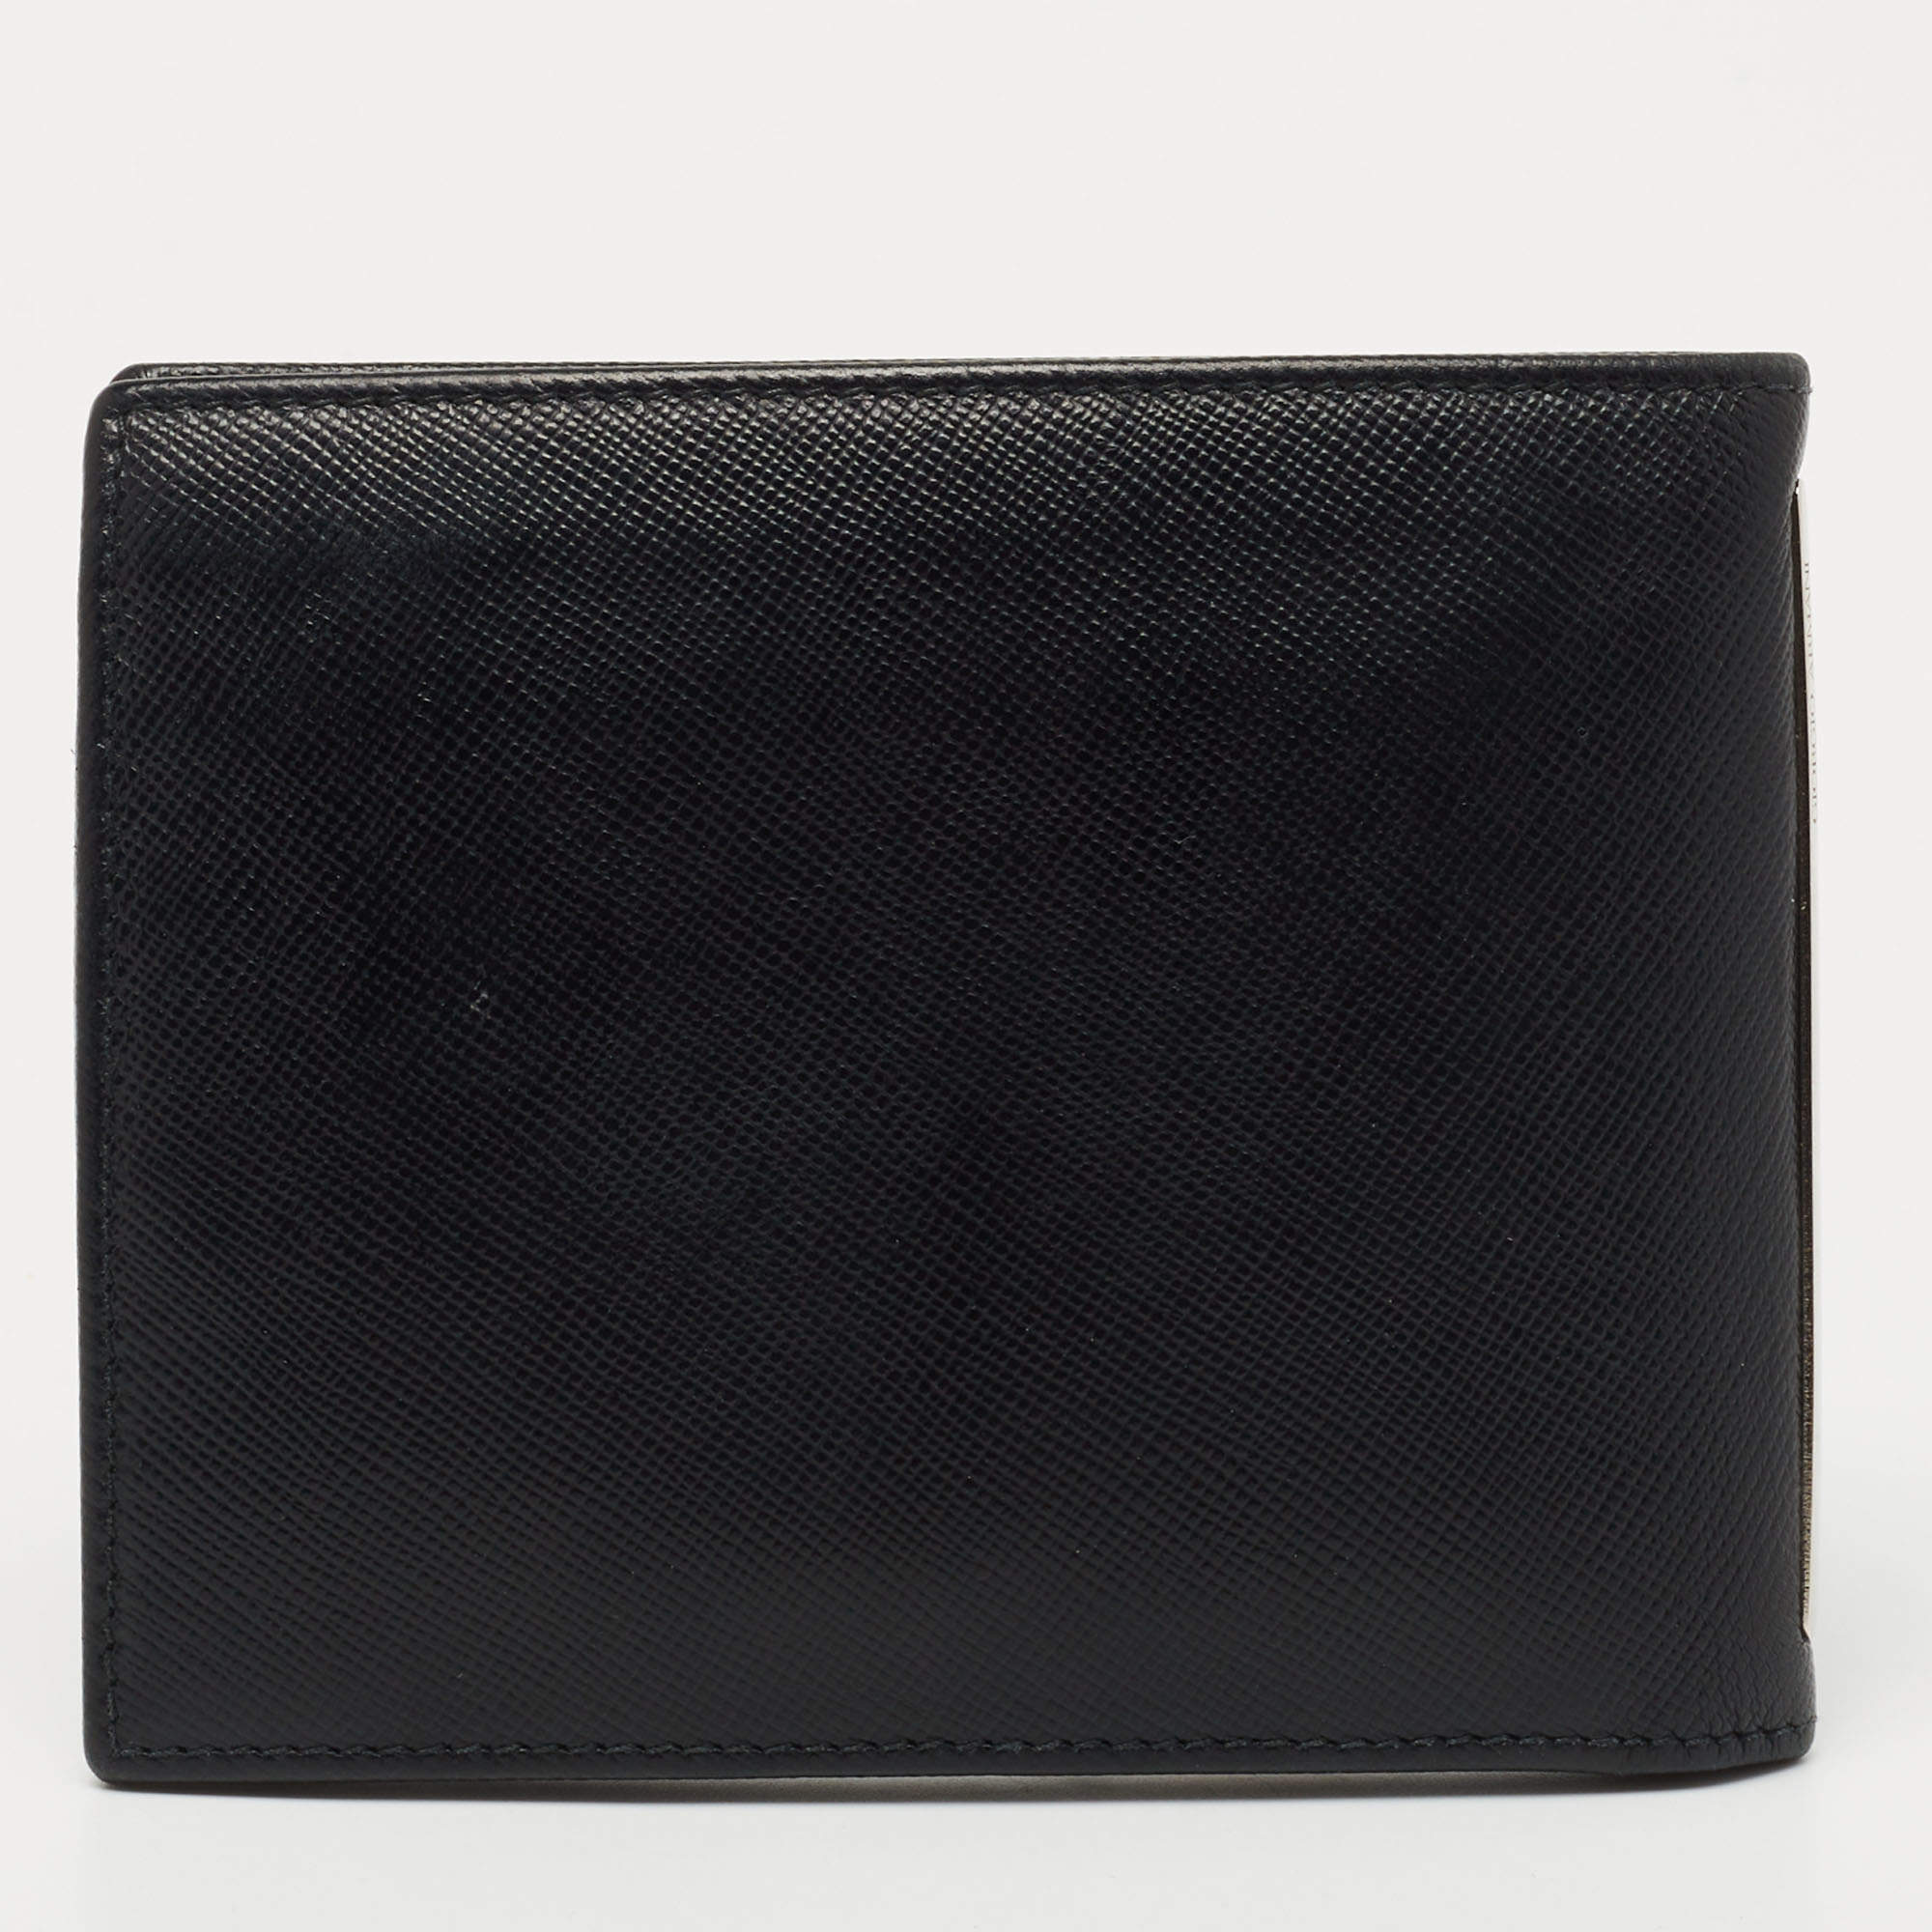 Giorgio Armani Black Leather Bifold Wallet Giorgio Armani | TLC